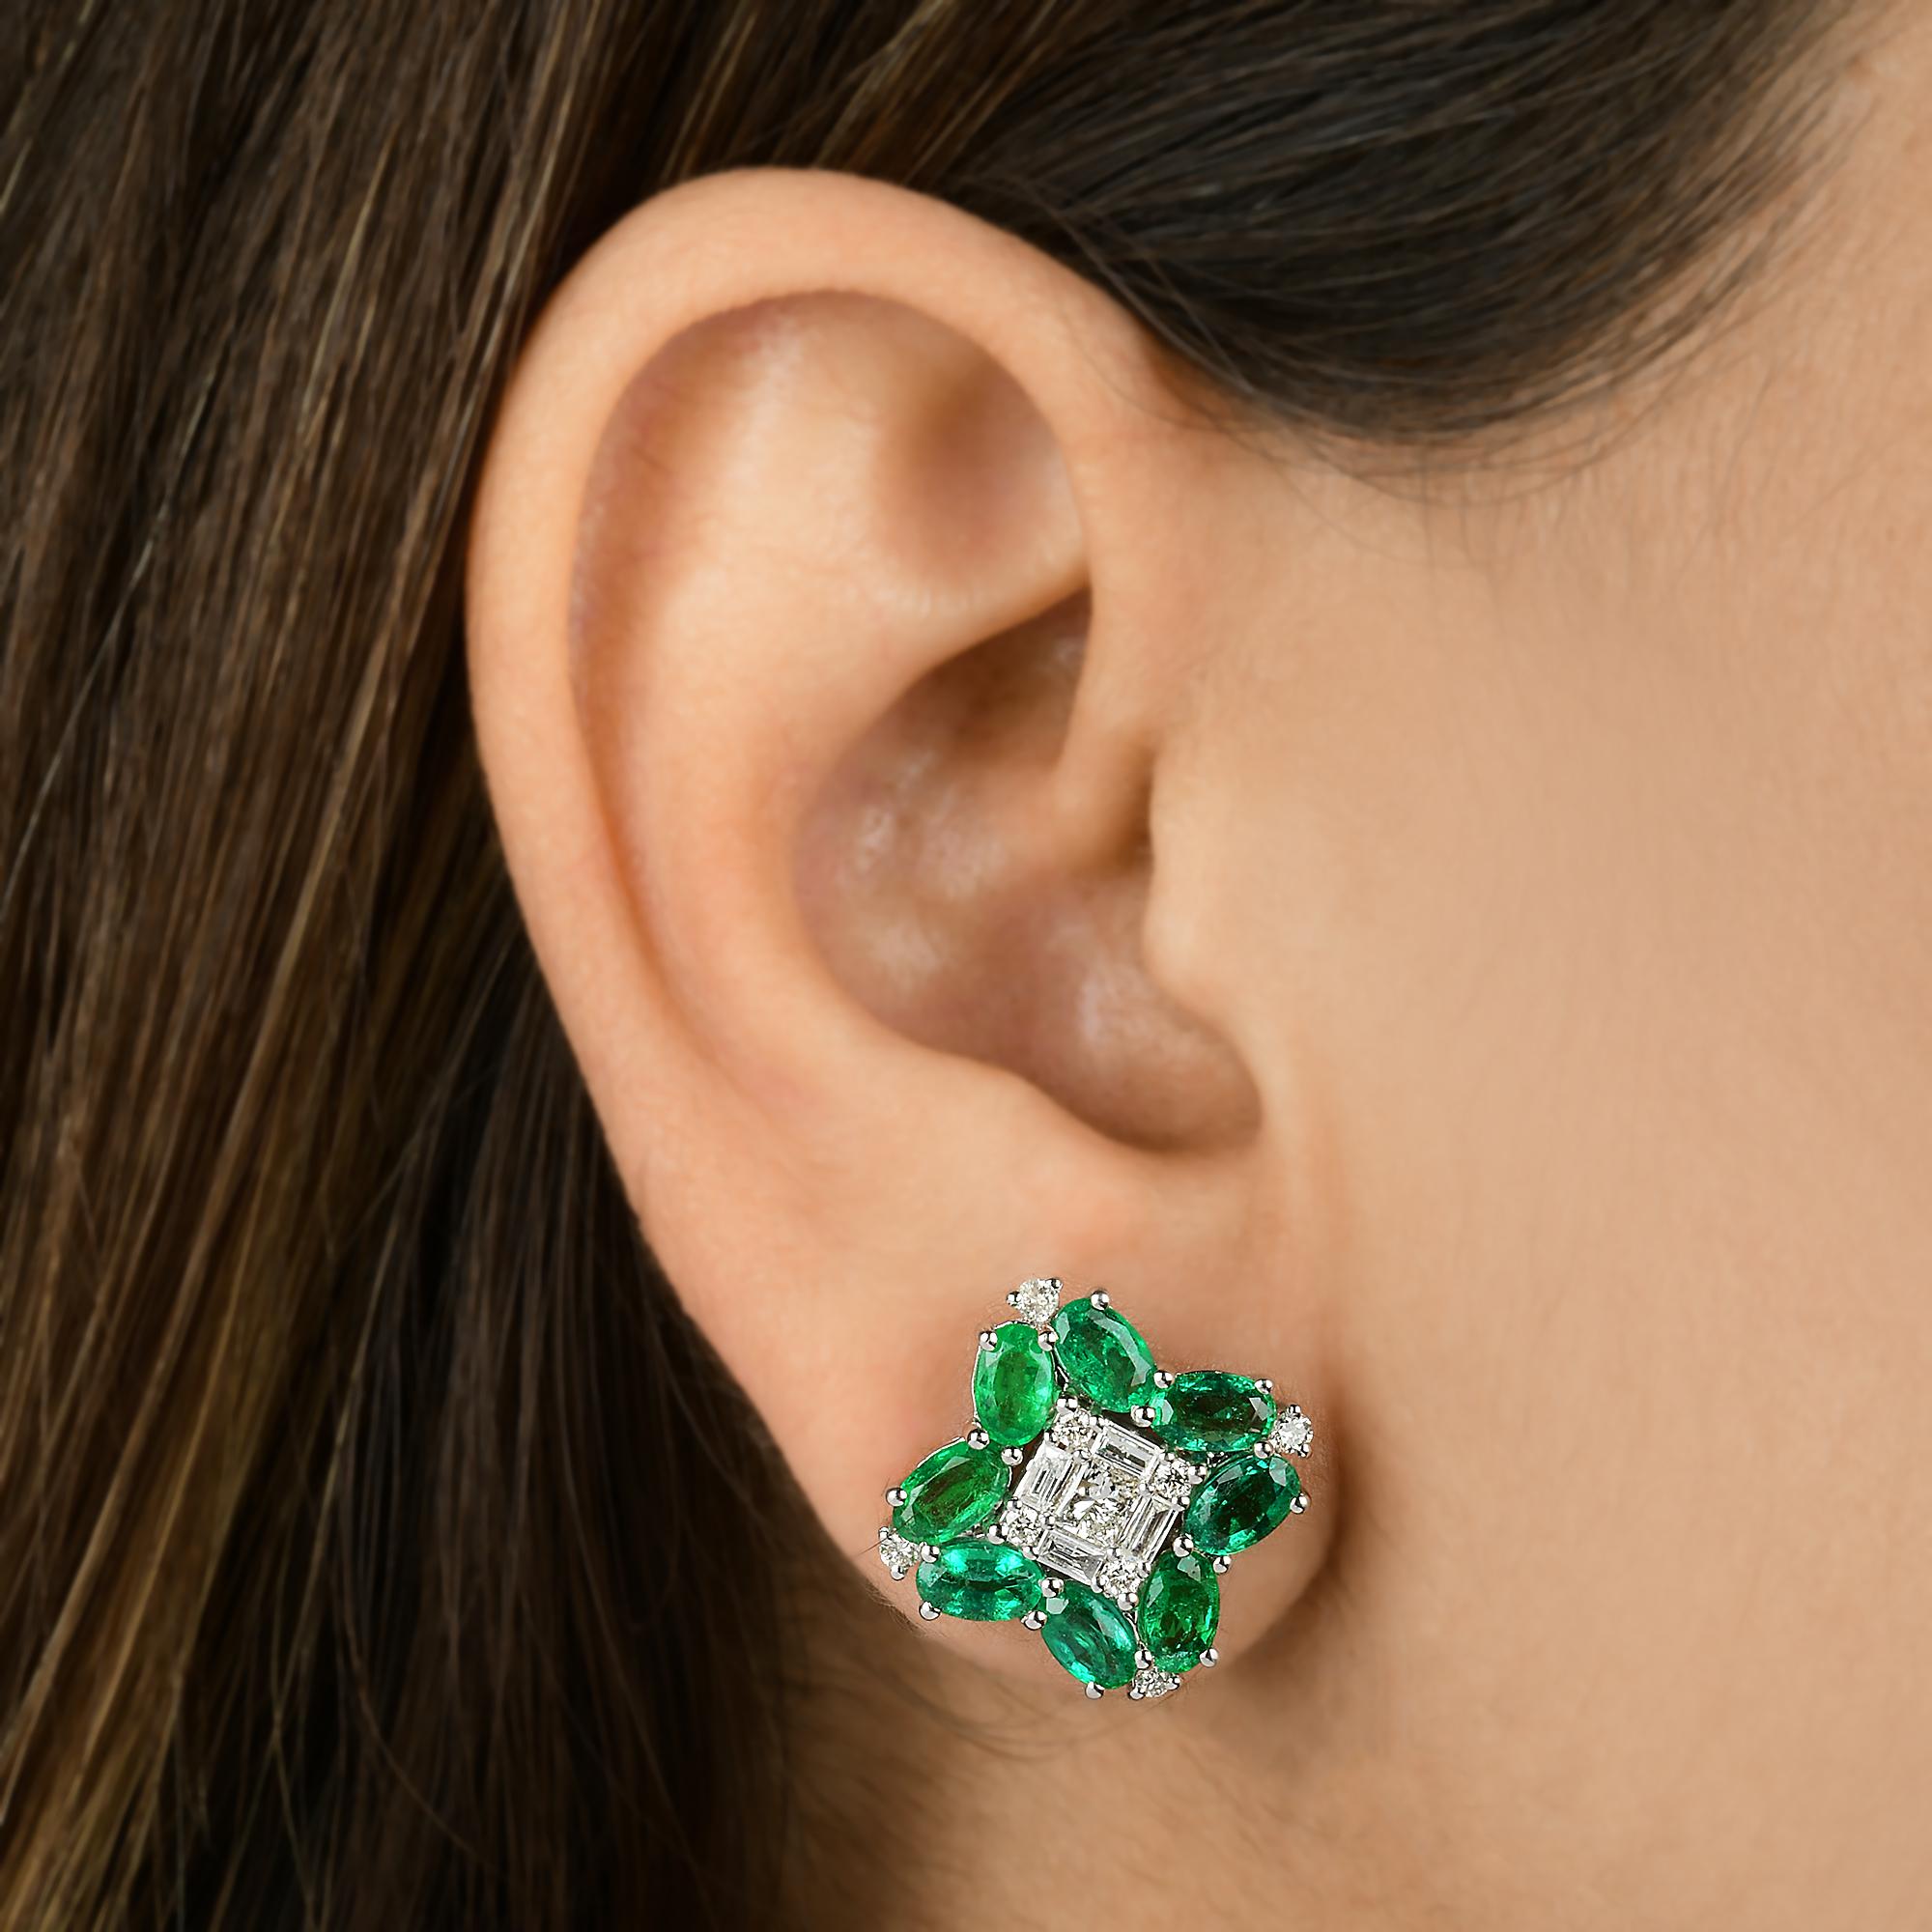 Modern Oval Zambian Emerald Gemstone Stud Earrings Baguette Diamond 18 Karat White Gold For Sale